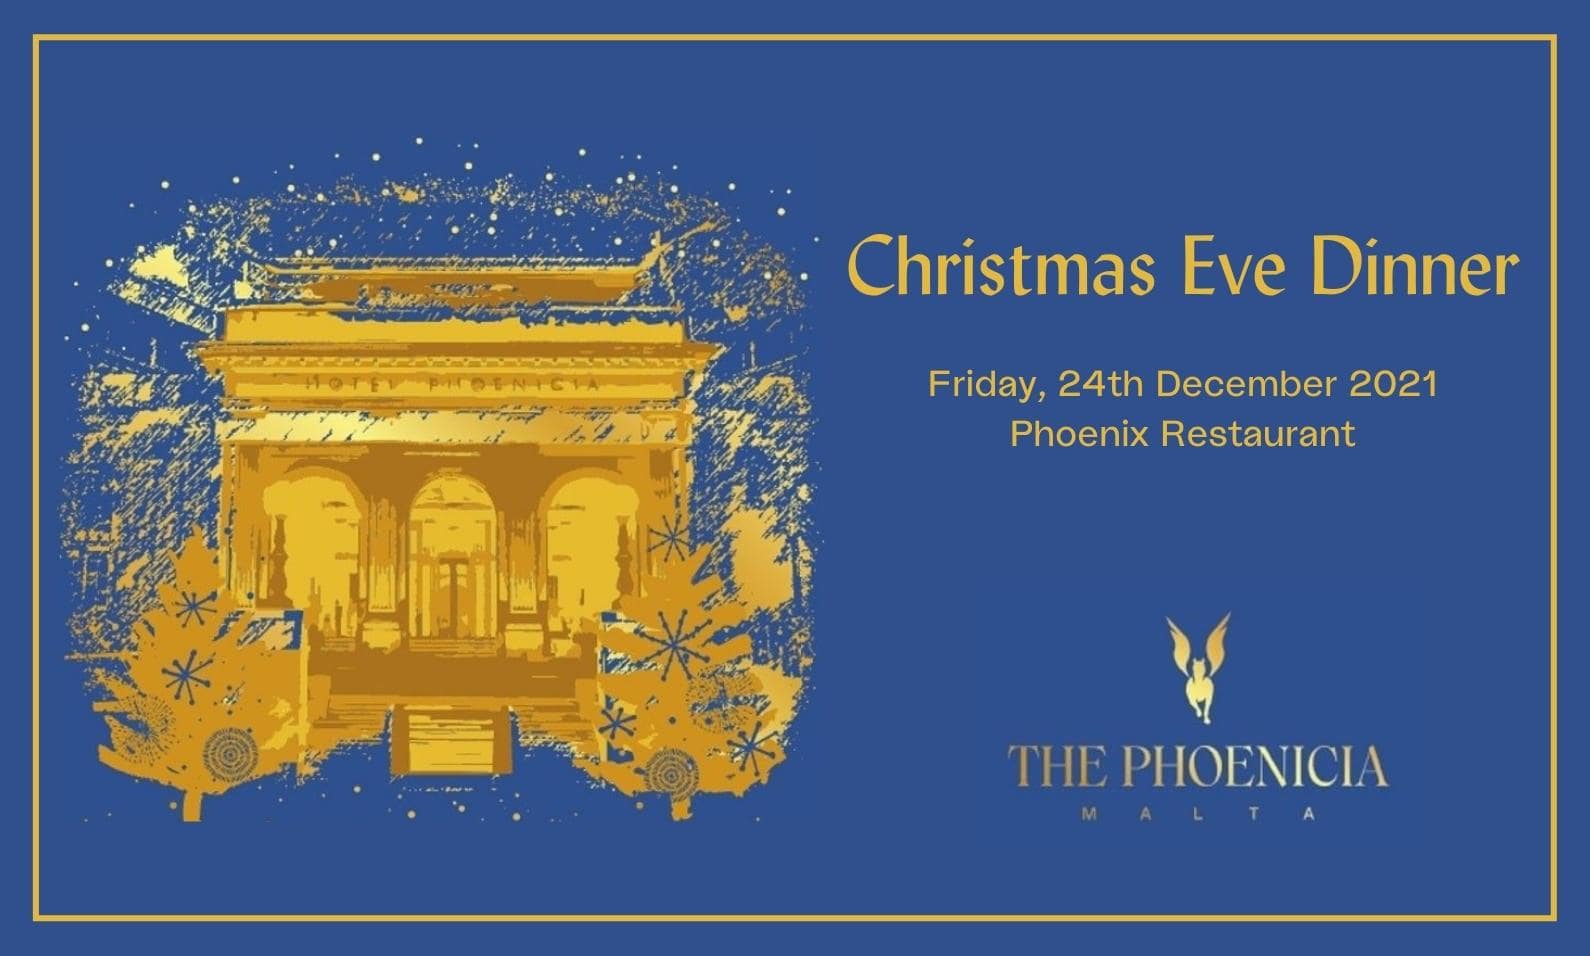 Christmas Eve Dinner, The Phoenicia Malta